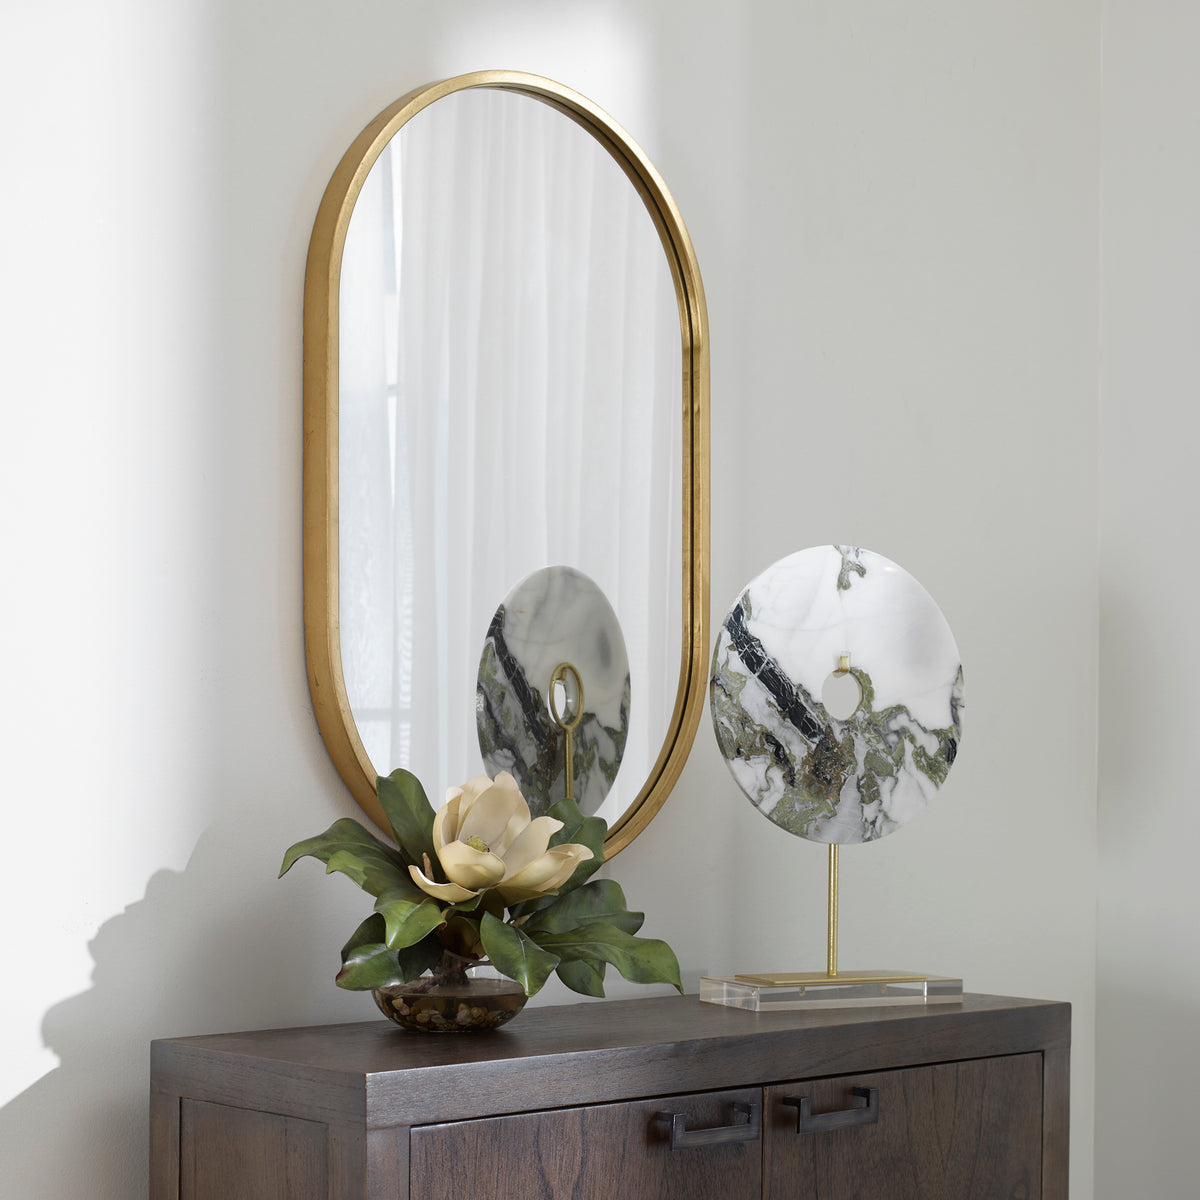 Varina Minimalist Gold Oval Mirror